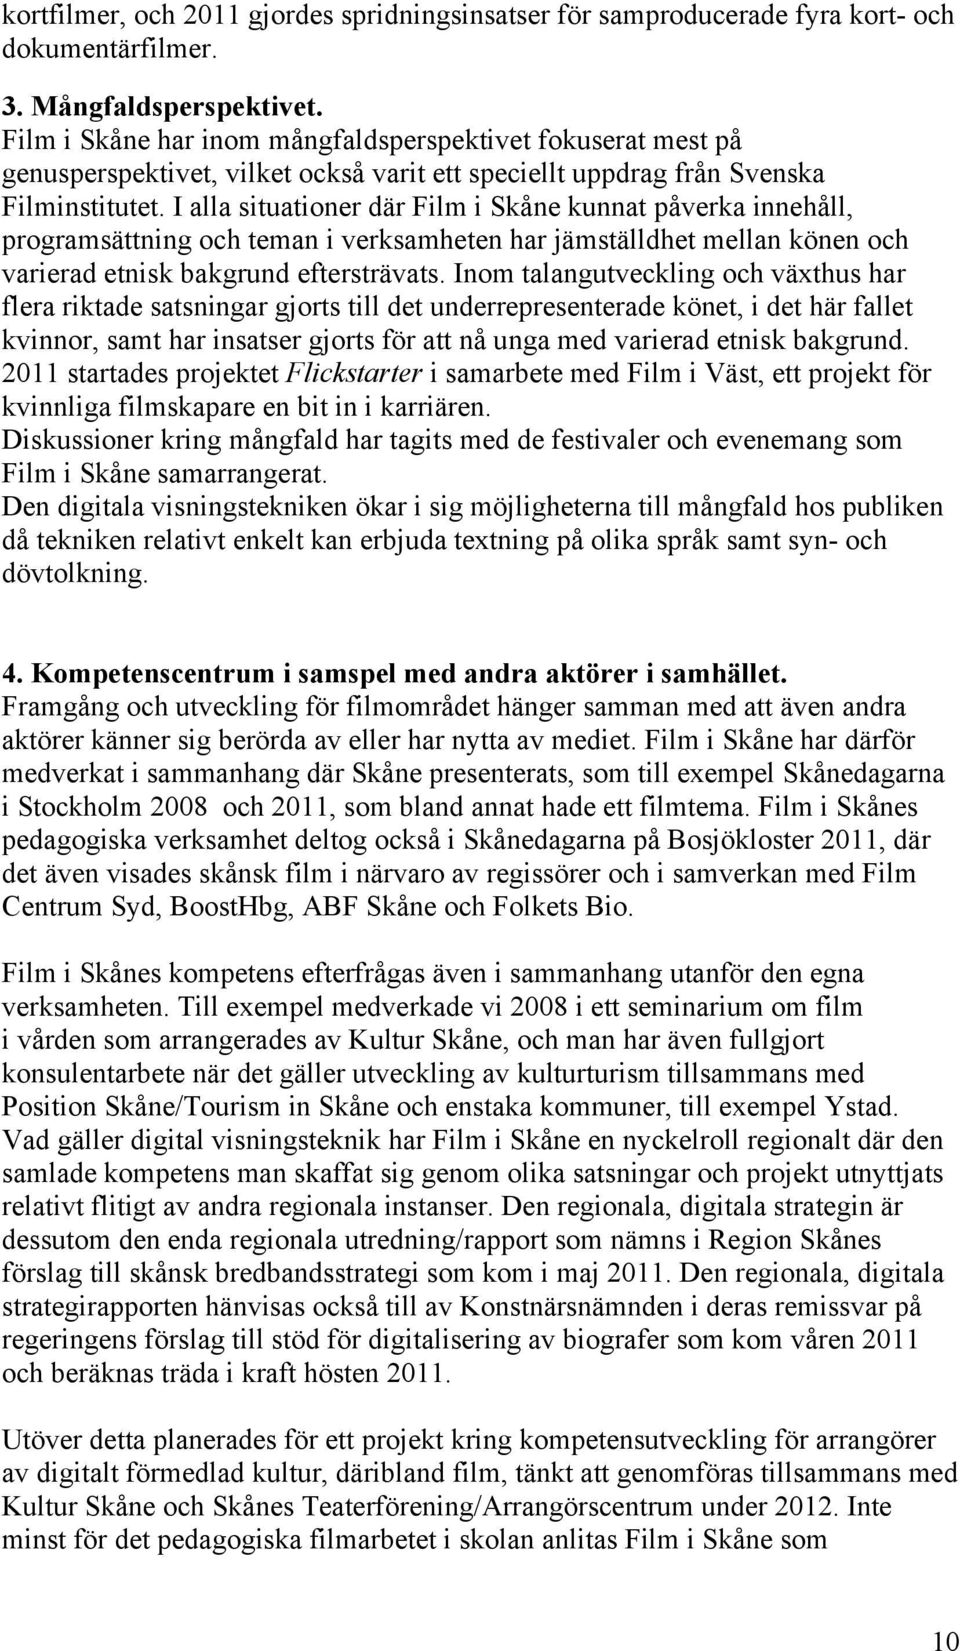 I alla situationer där Film i Skåne kunnat påverka innehåll, programsättning och teman i verksamheten har jämställdhet mellan könen och varierad etnisk bakgrund eftersträvats.